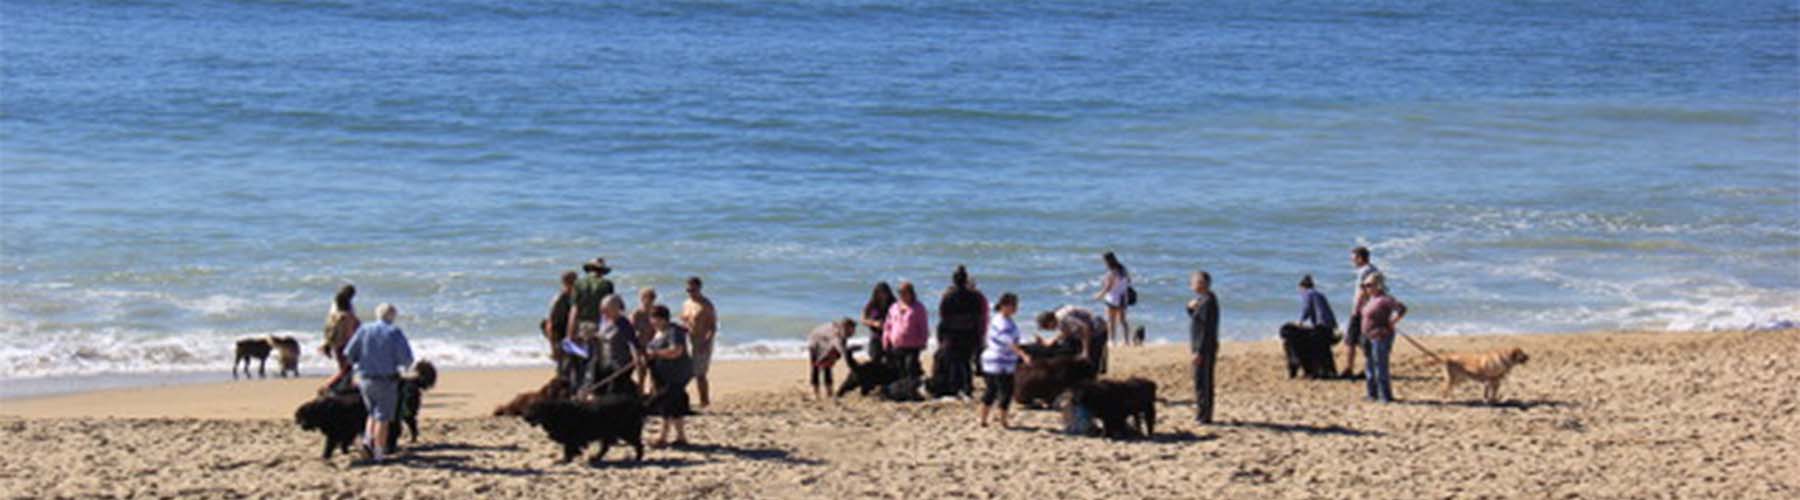 newfoundland_dog_club_on_beach